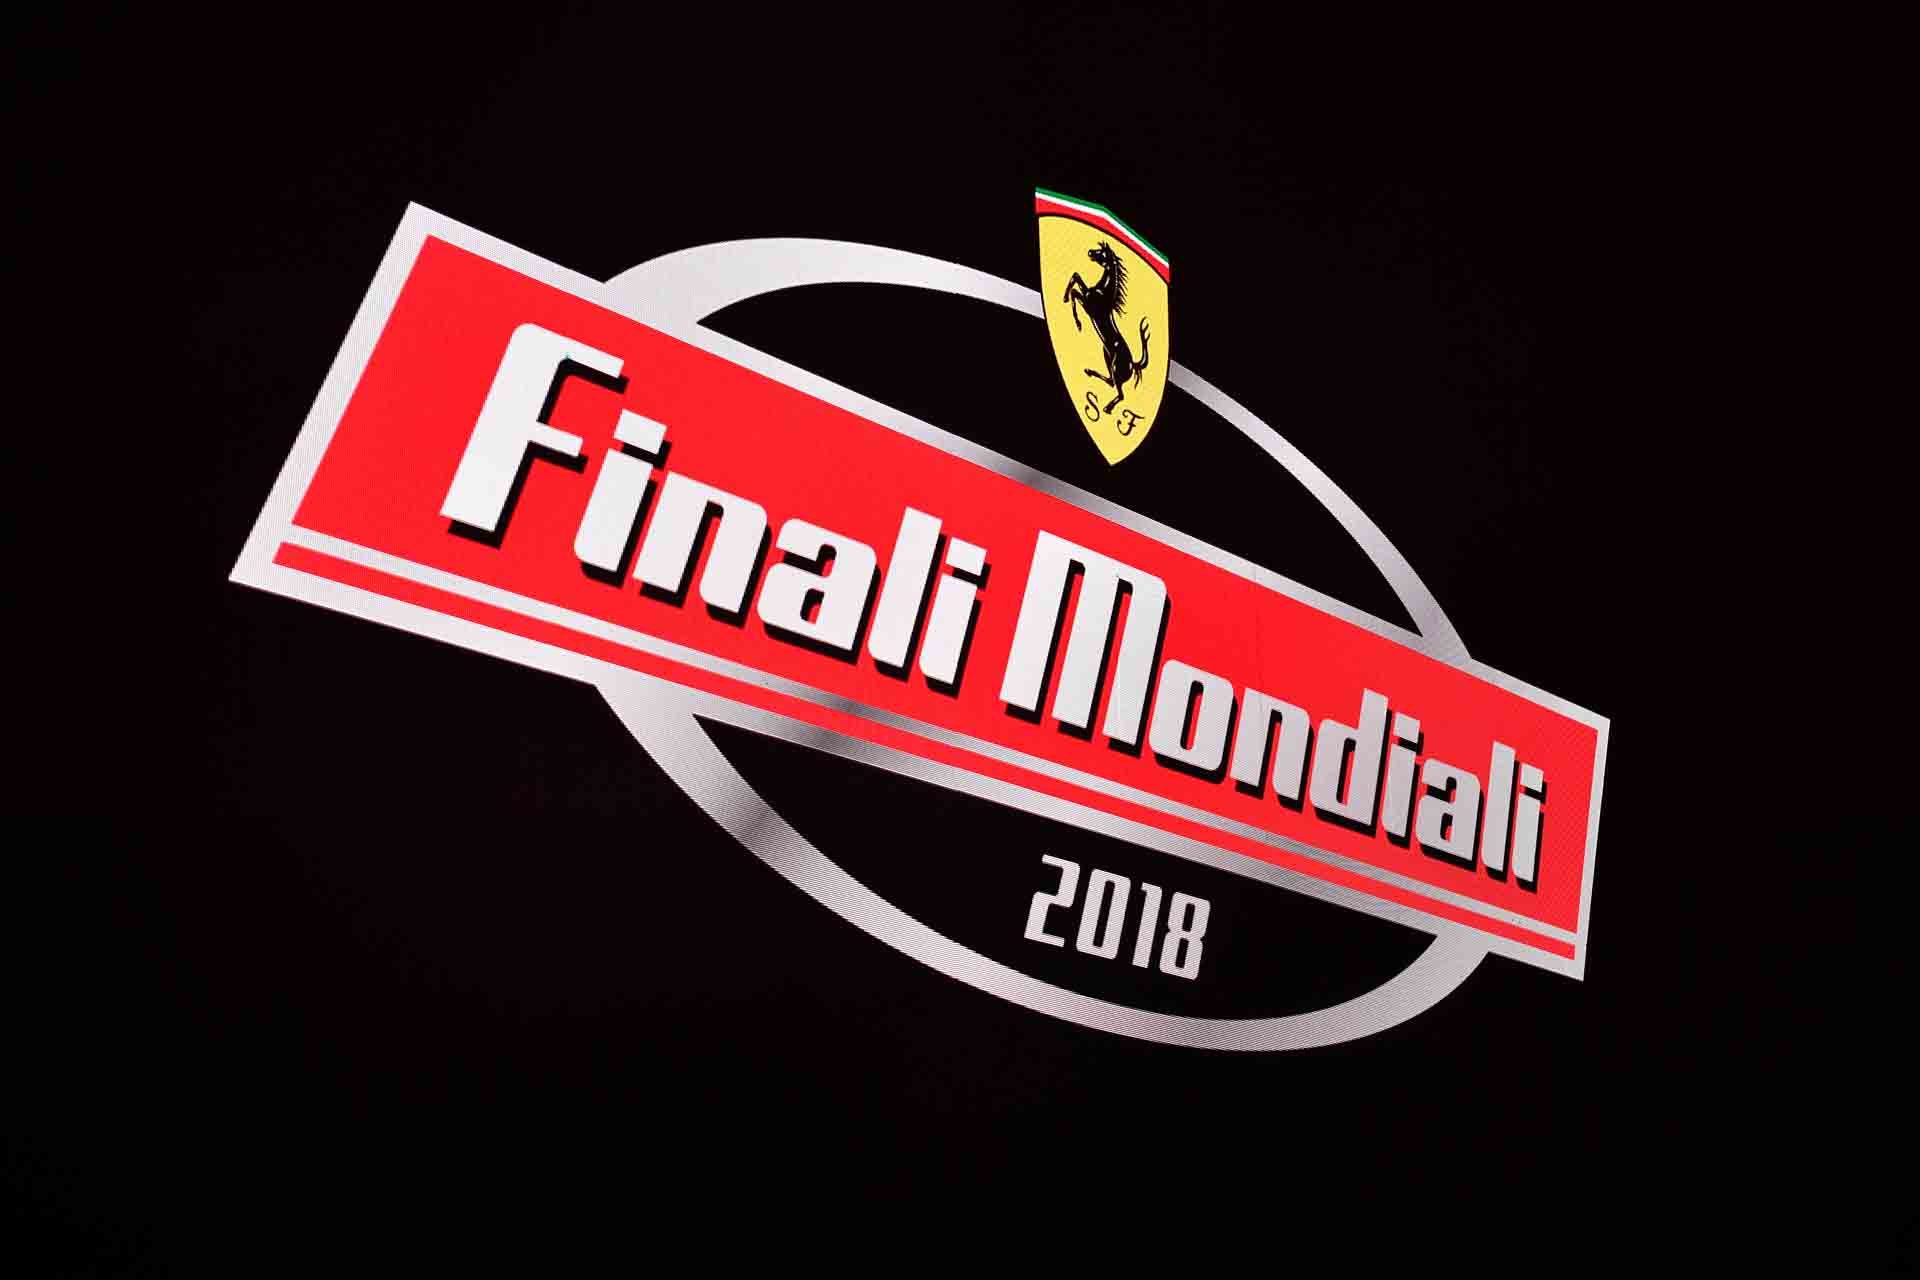 Ferrari Challenge 2018 Finali